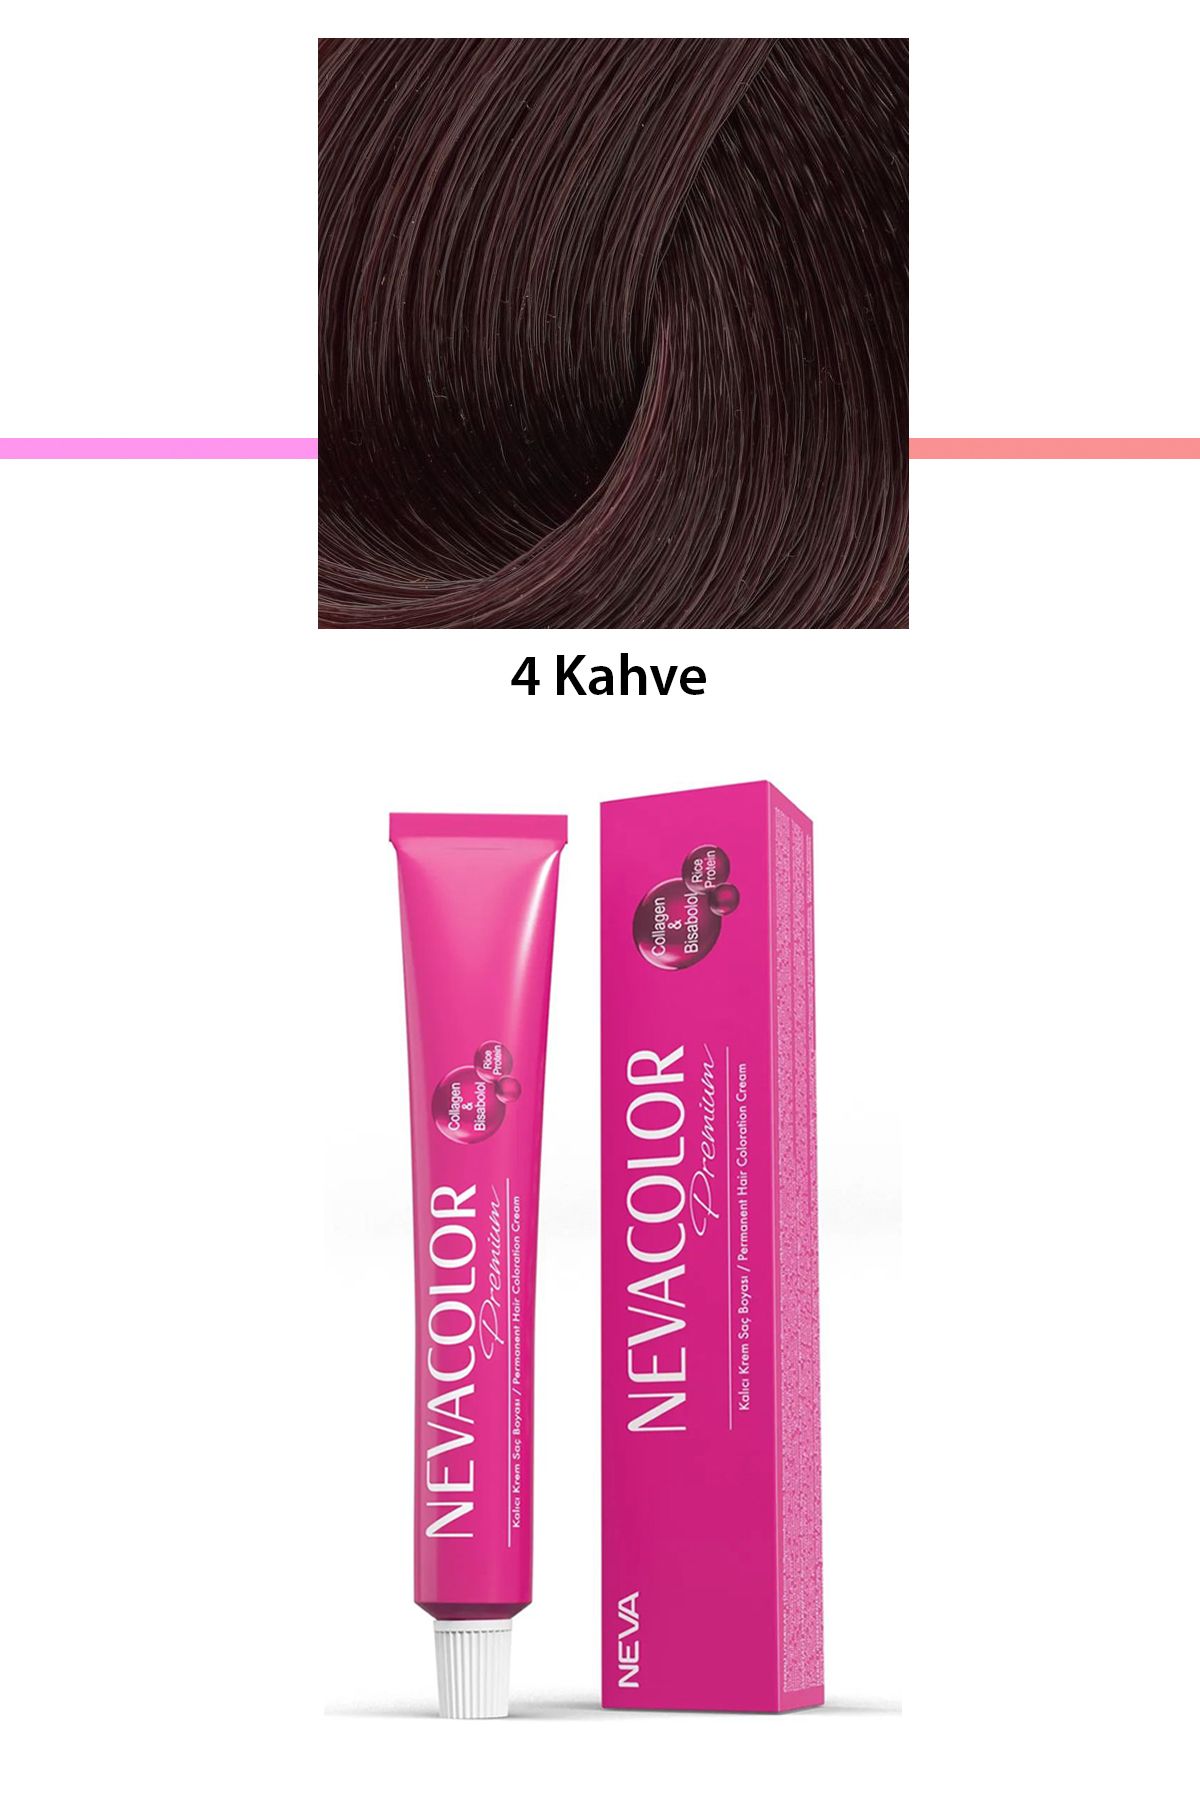 Neva Color Premium 5 Açık Kahve - Kalıcı Krem Saç Boyası 50 g Tüp